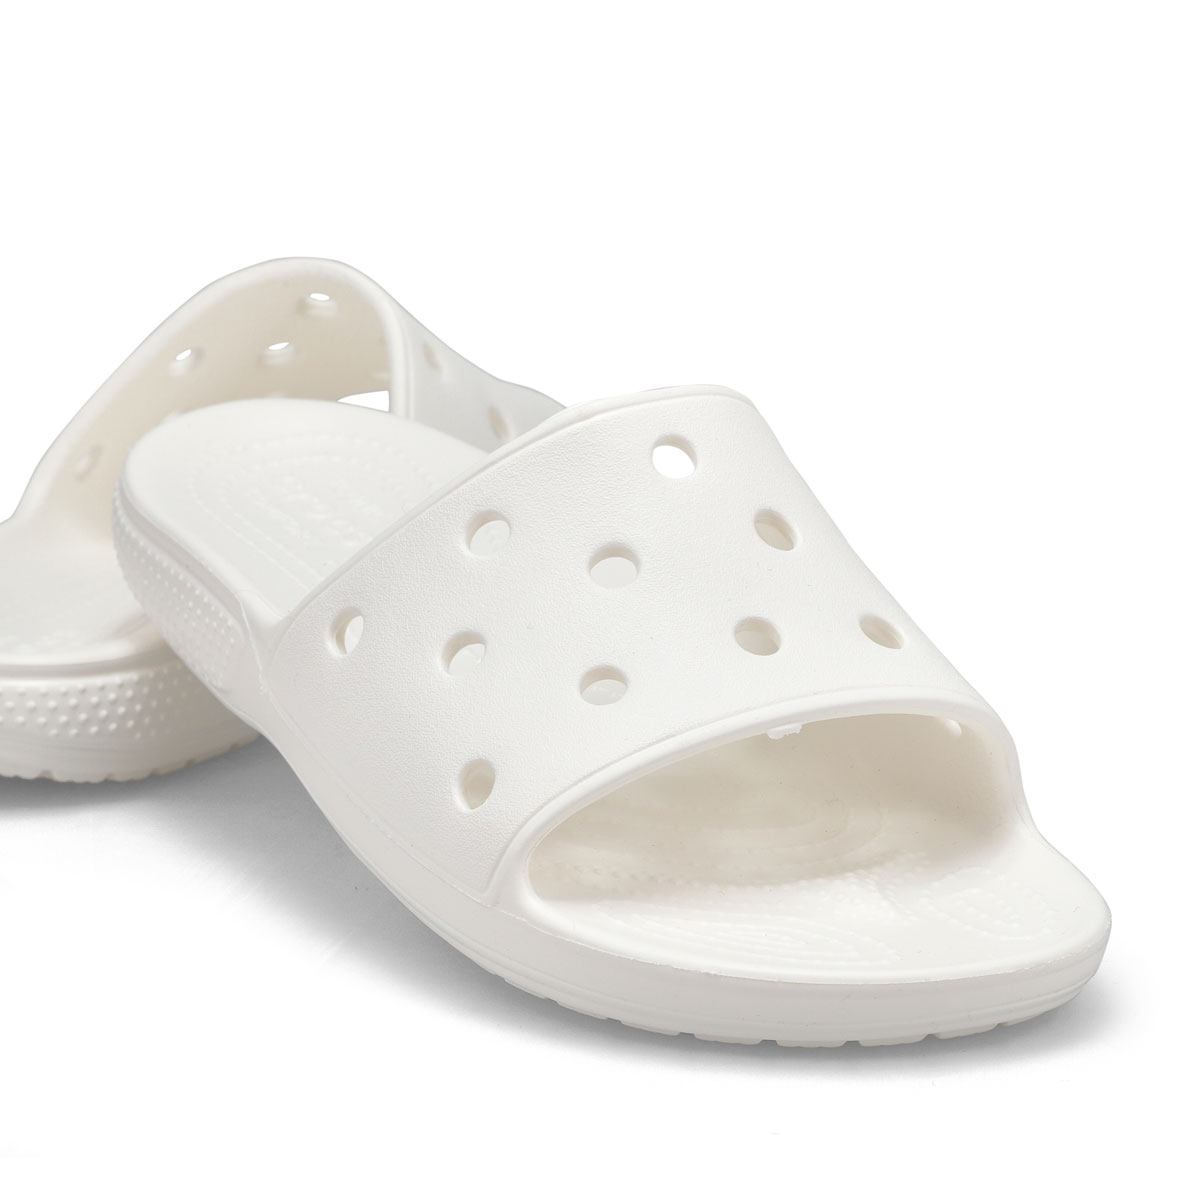 Crocs Women's Classic Crocs Slide Sandal - Wh | SoftMoc.com